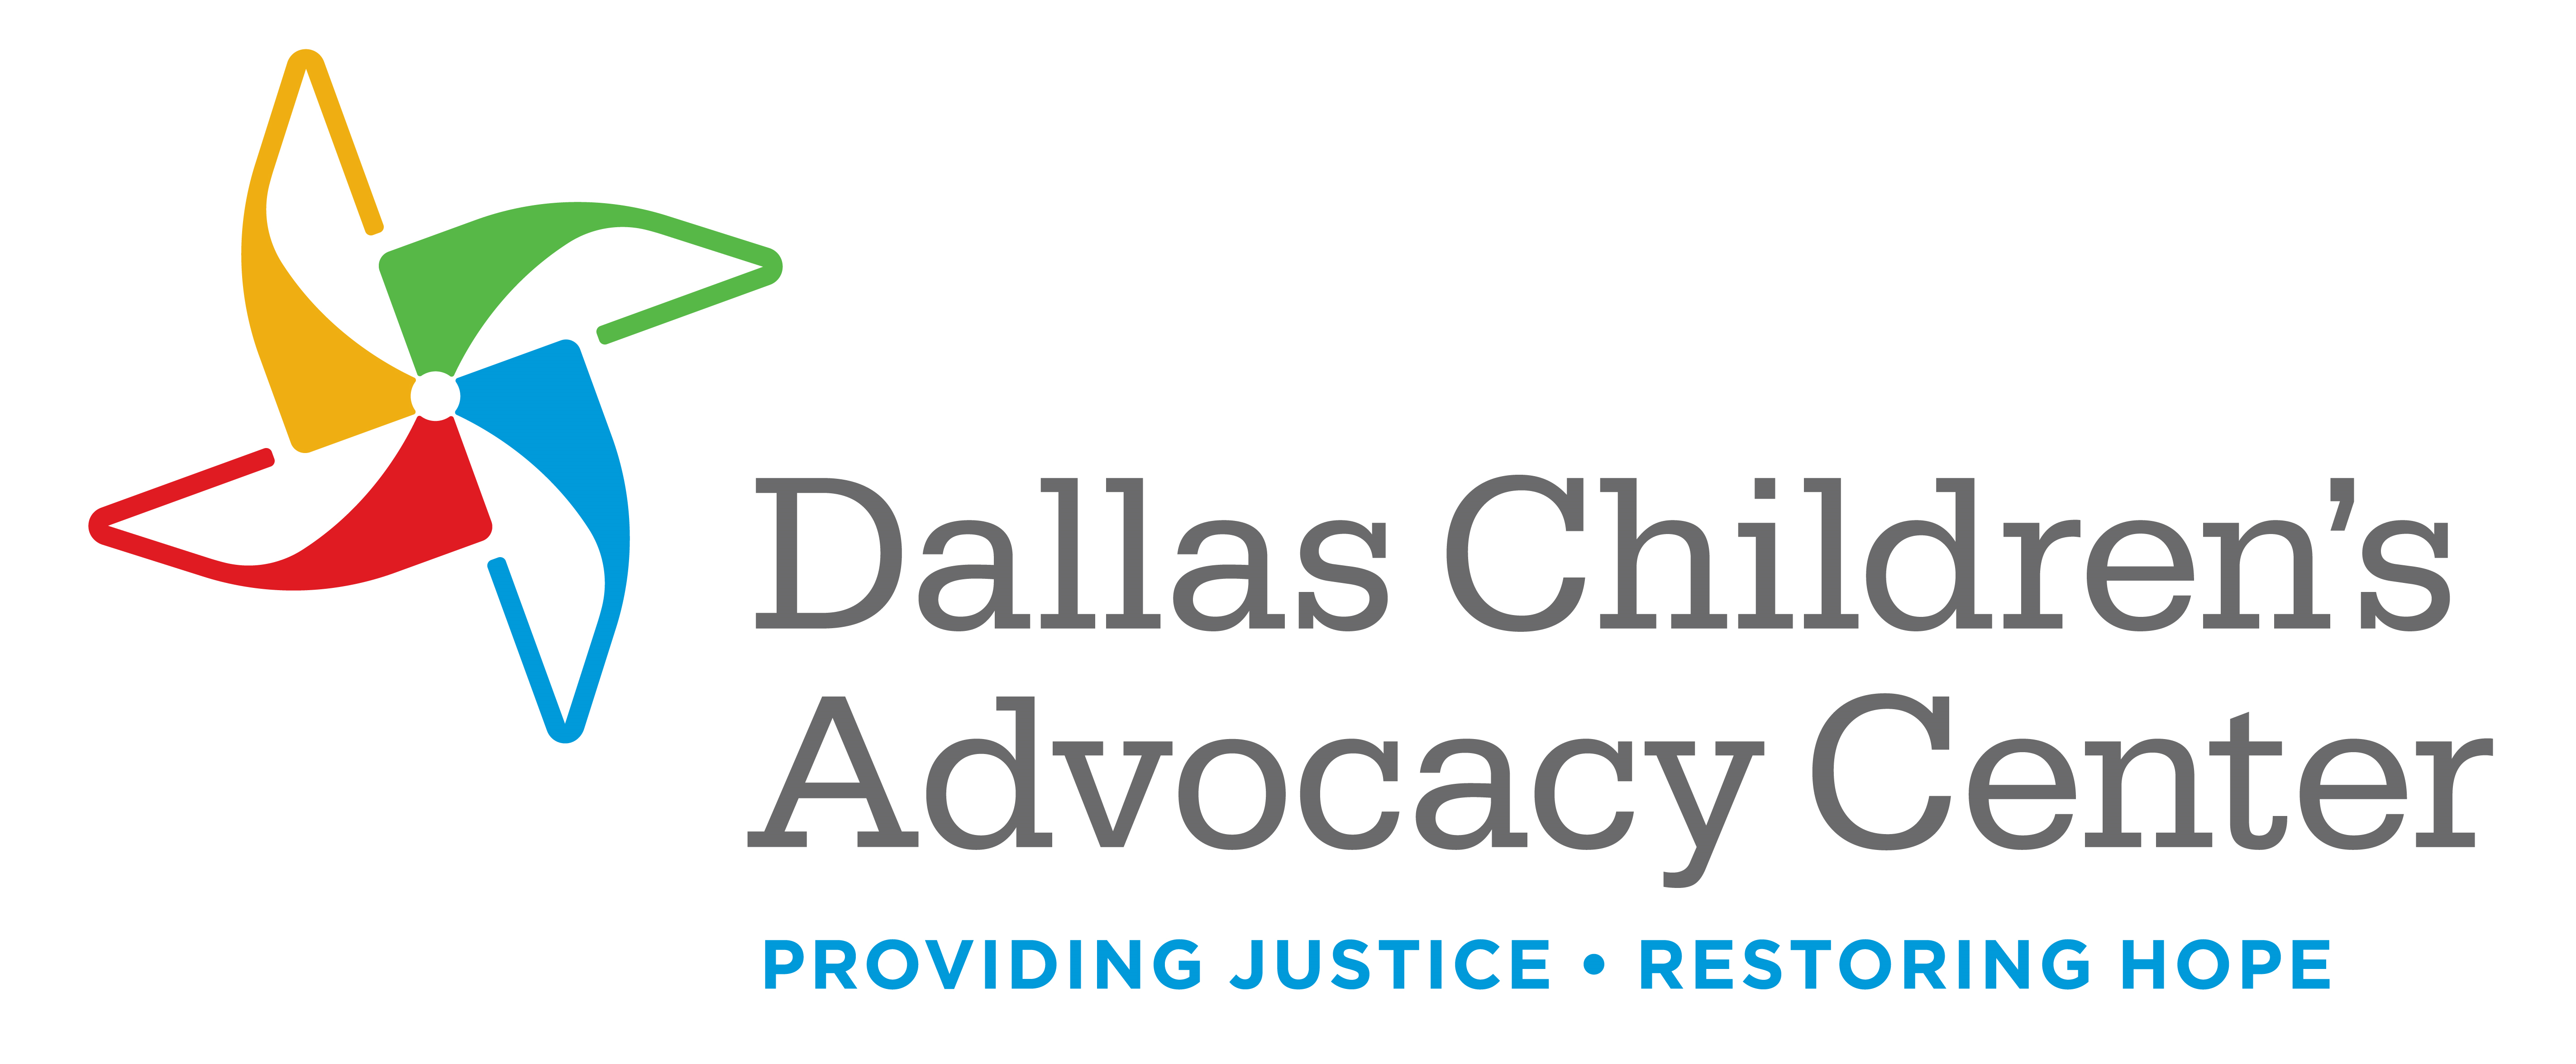 Dallas Children's Advocacy Center Company Logo